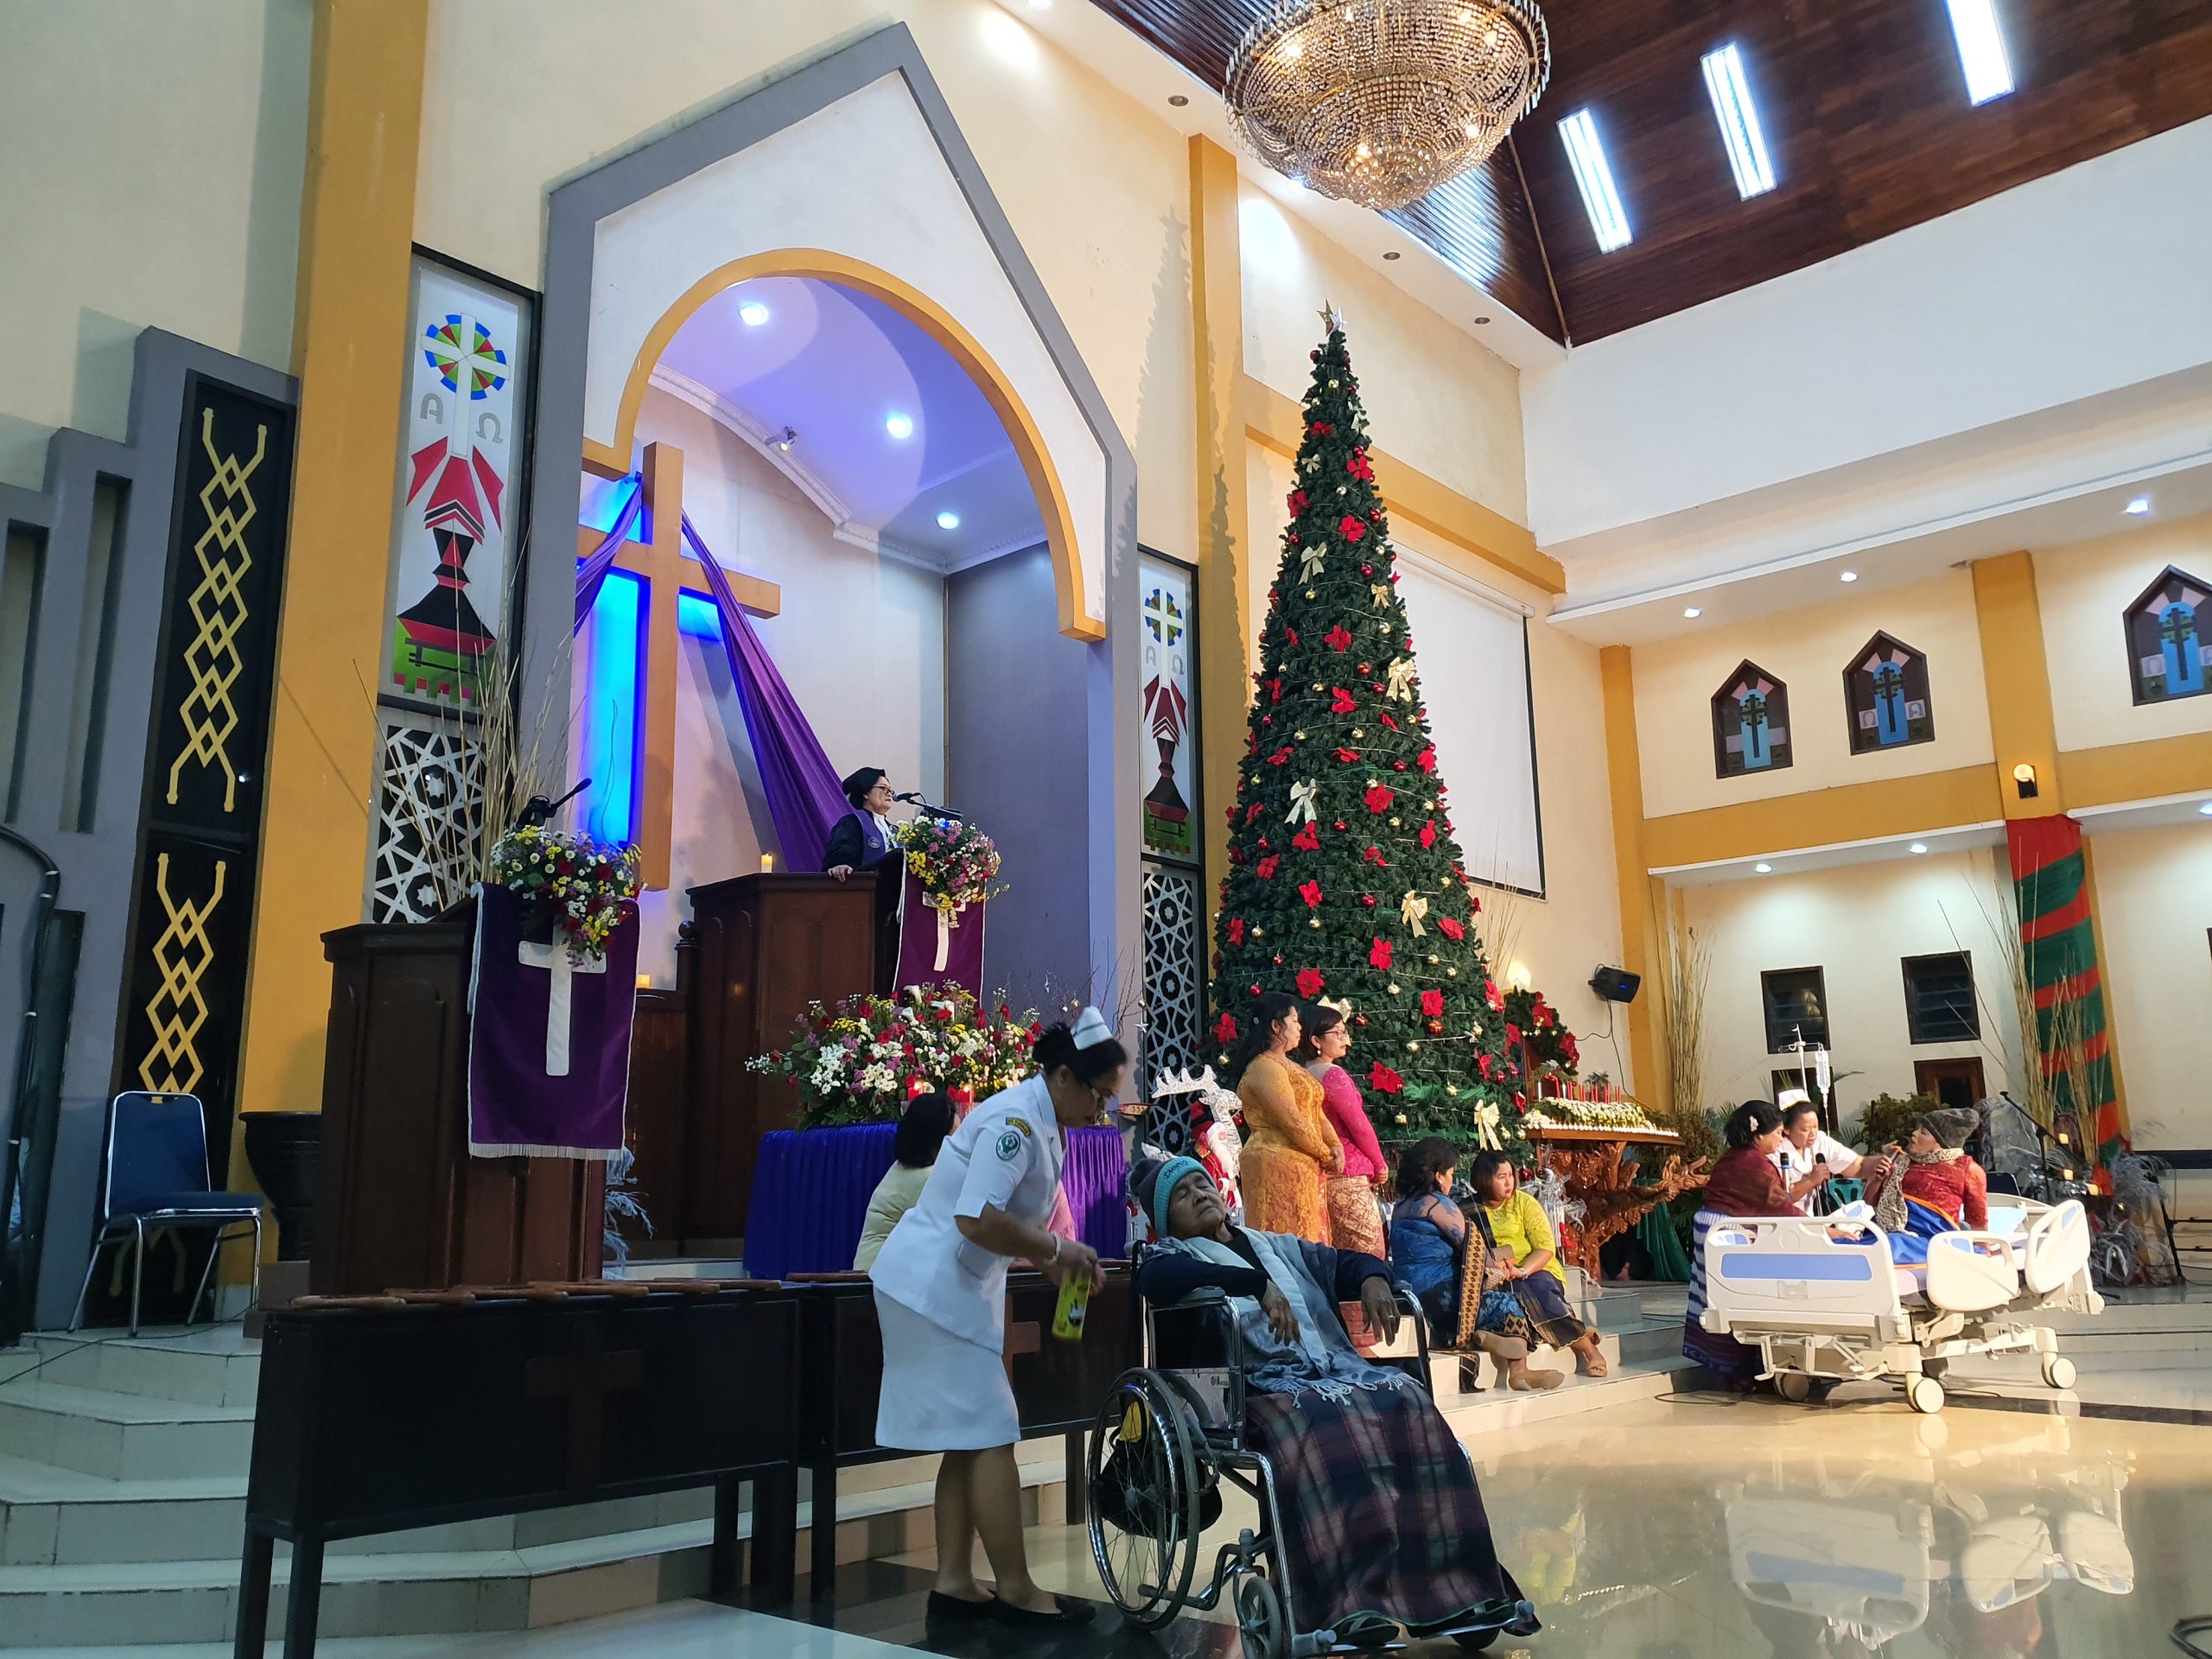 Pemerintah mengizinkan Umat Kristiani untuk mengikuti kegiatan peribadatan Hari Raya Natal secara berjamaah di Gereja dengan pembatasan jumlah jemaat 50 persen dari total kapasitas gereja.